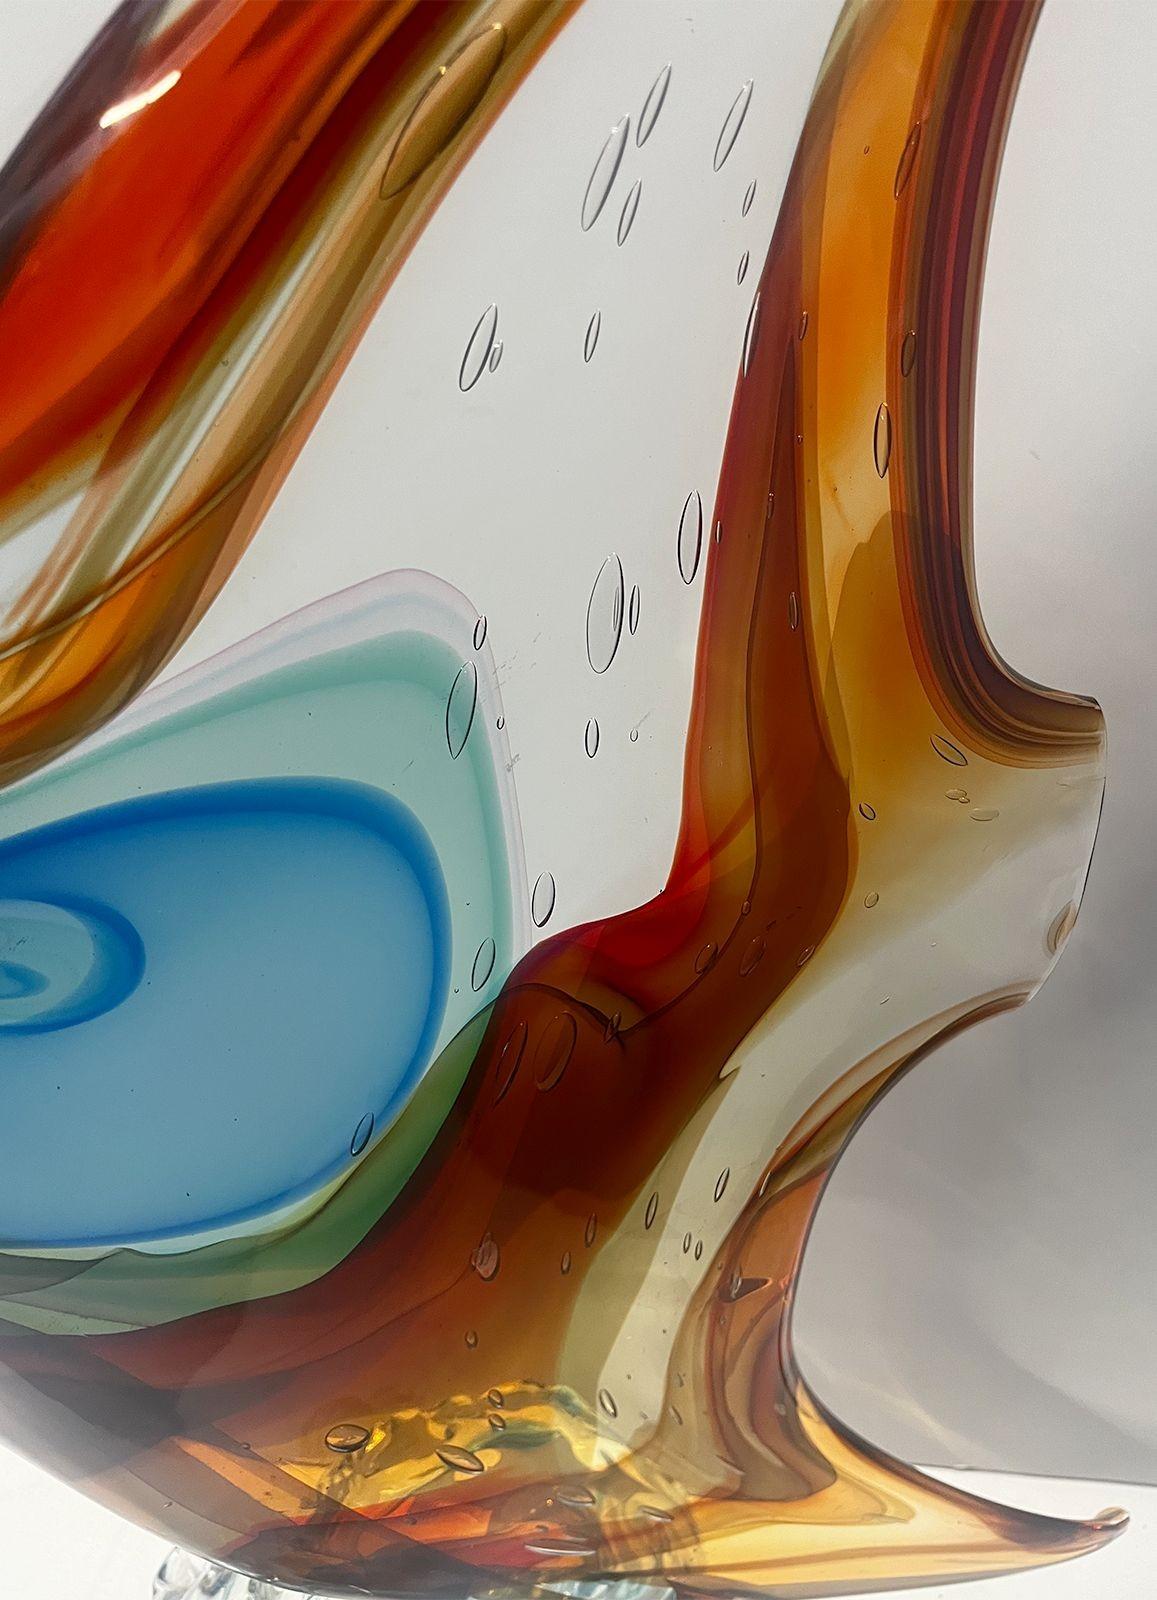 Sculpture vintage colorée en forme de poisson, réalisée par Sergio Costantini pour Vetro Artistico Murano, dans des tons clairs, rouges, bleus, jaunes et verts. Fabriqué en Italie, 20e siècle (avec autocollant et signature).
22 